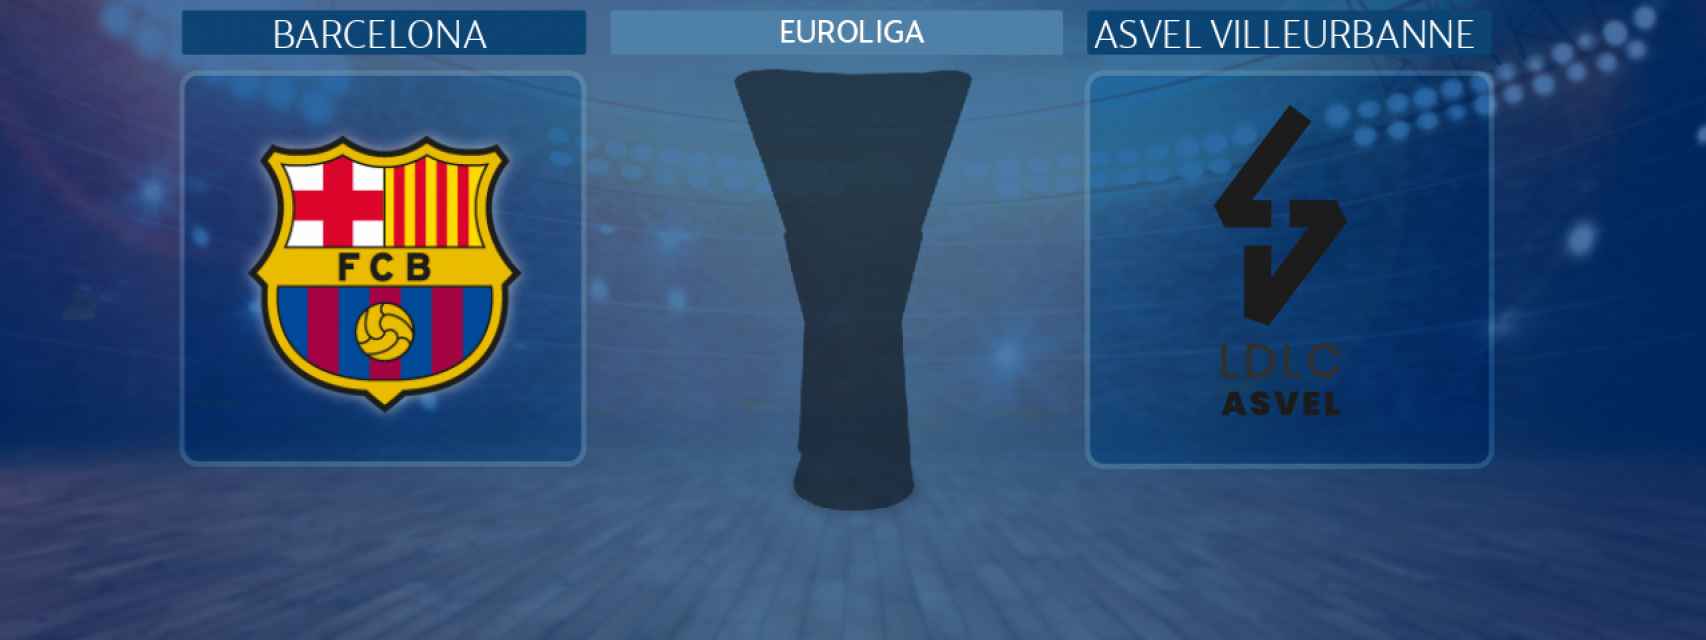 Barcelona - Asvel Villeurbanne,   partido de la Euroliga